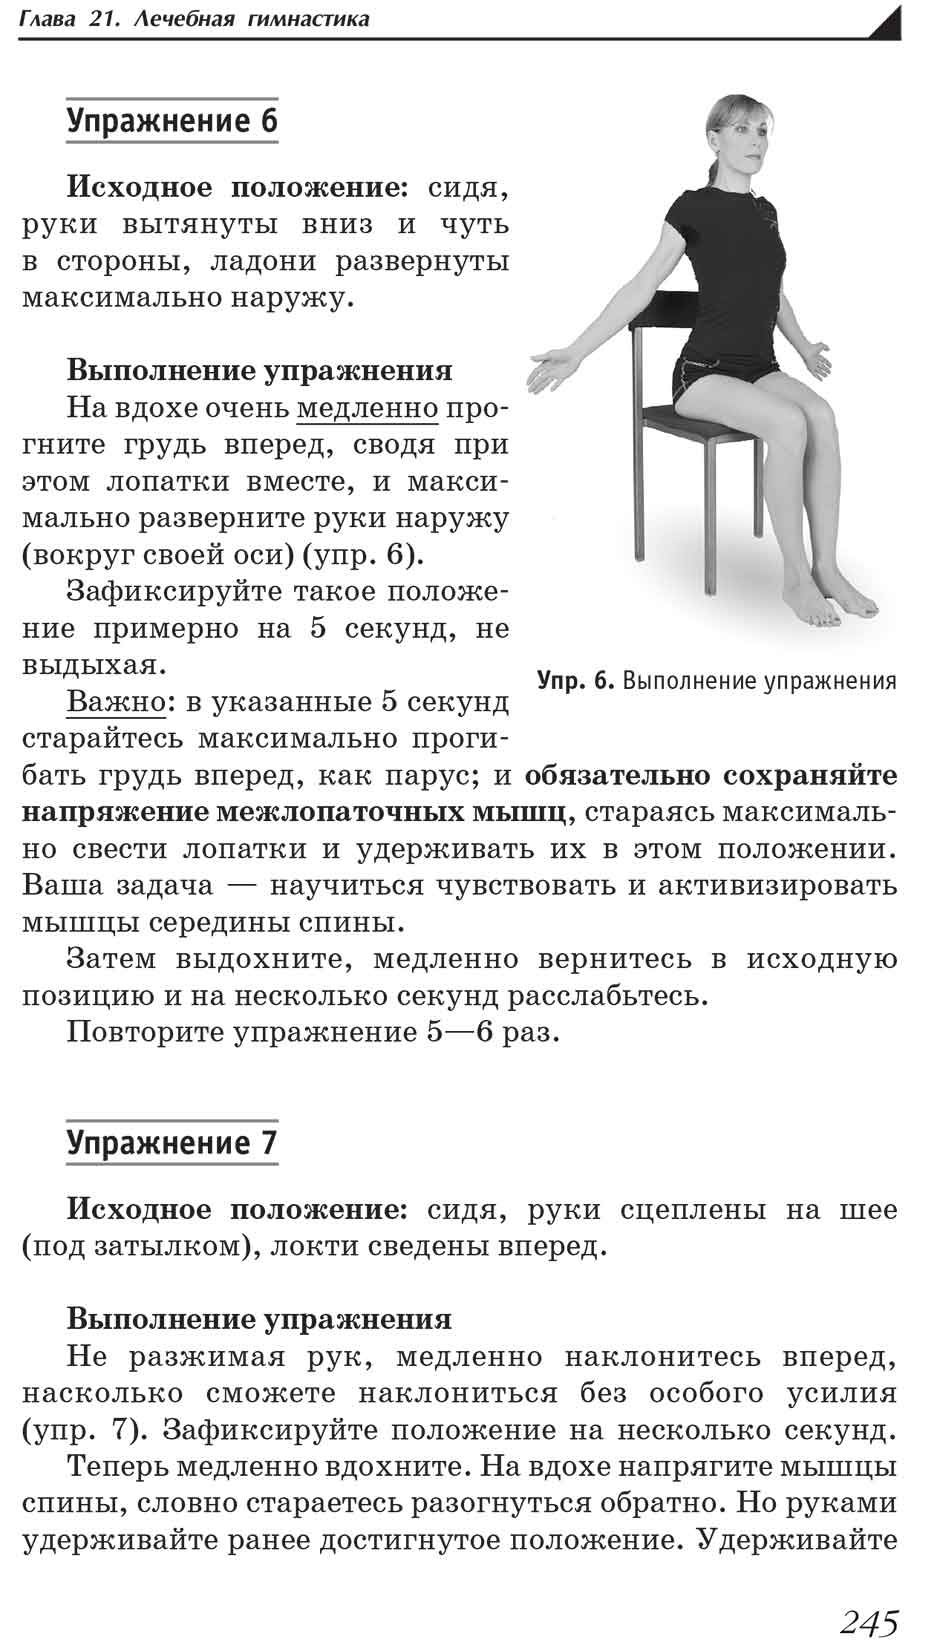 Пример страницы из книги "Боль в спине и шее. Что нужно знать о своем заболевании" - П. В. Евдокименко